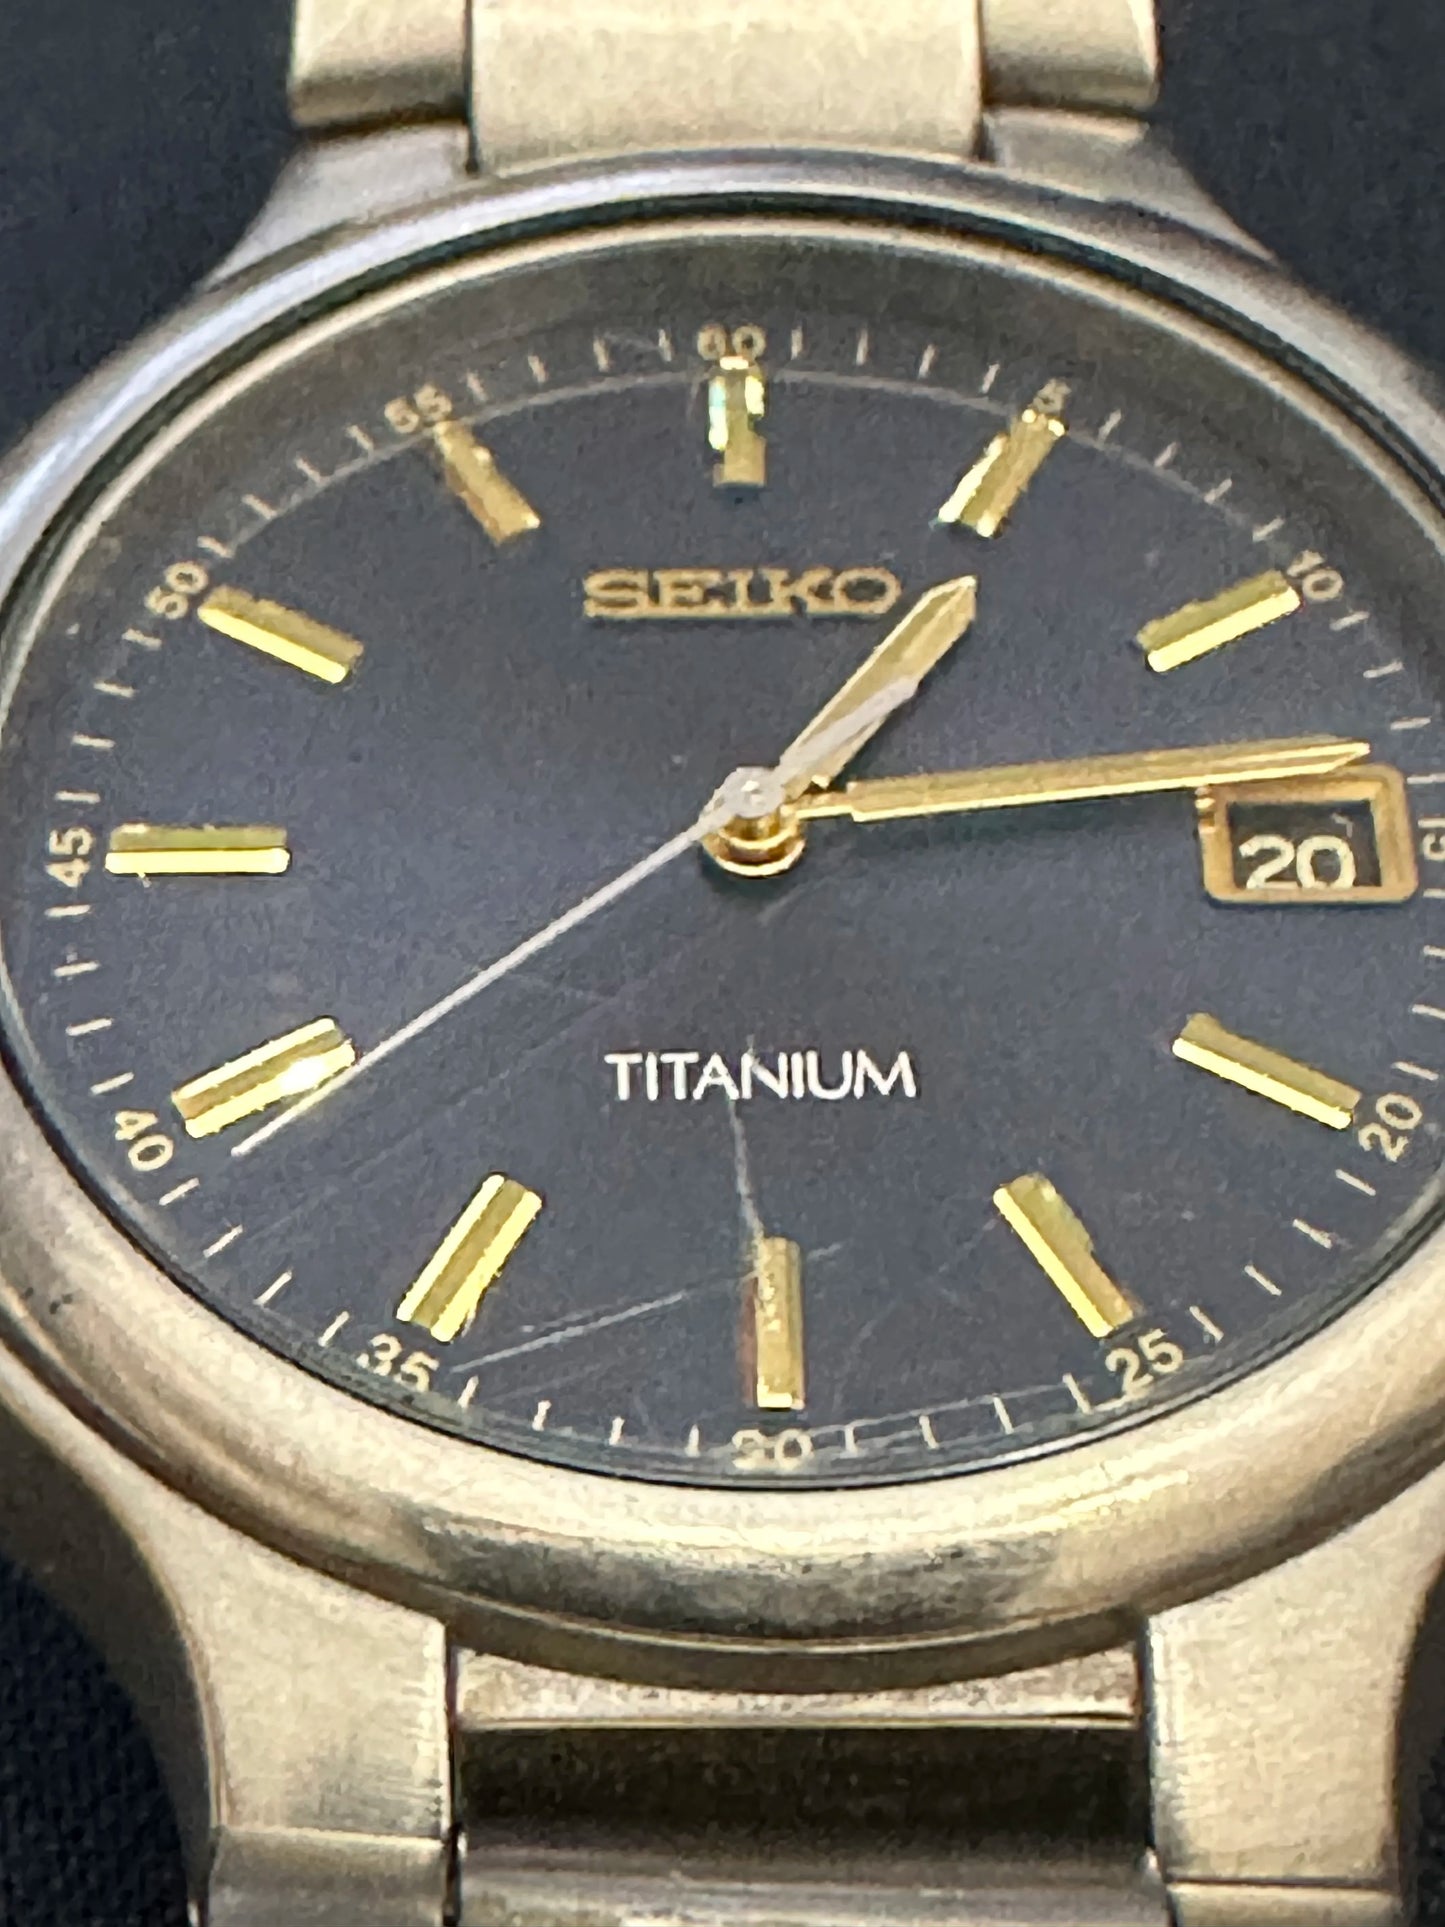 Seiko Titanium Quartz Analog Watch 7n42-8109 Battery